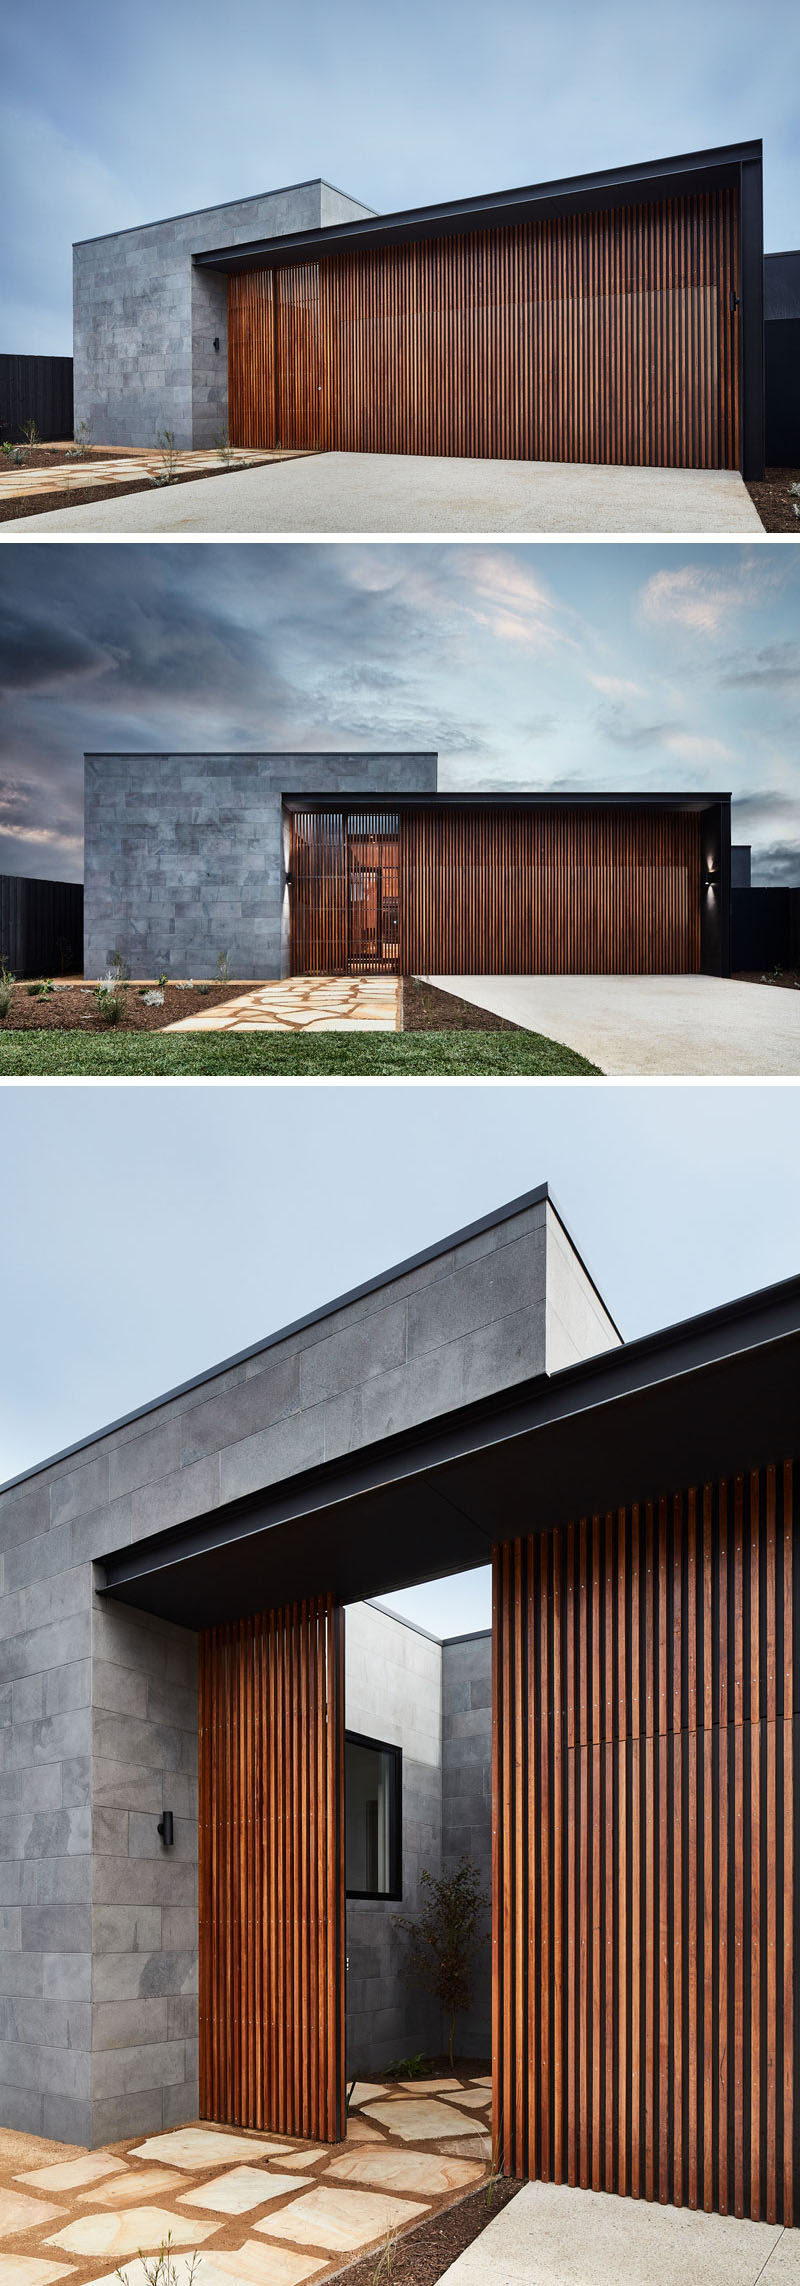 Этот современный дом имеет фасад из горизонтальных плит из голубого камня и вертикальных натуральных пород дерева. Входная дверь в дом гармонирует с вертикальными деревянными планками, создавая современный внешний вид. #ModernHouse # Stone #Wood